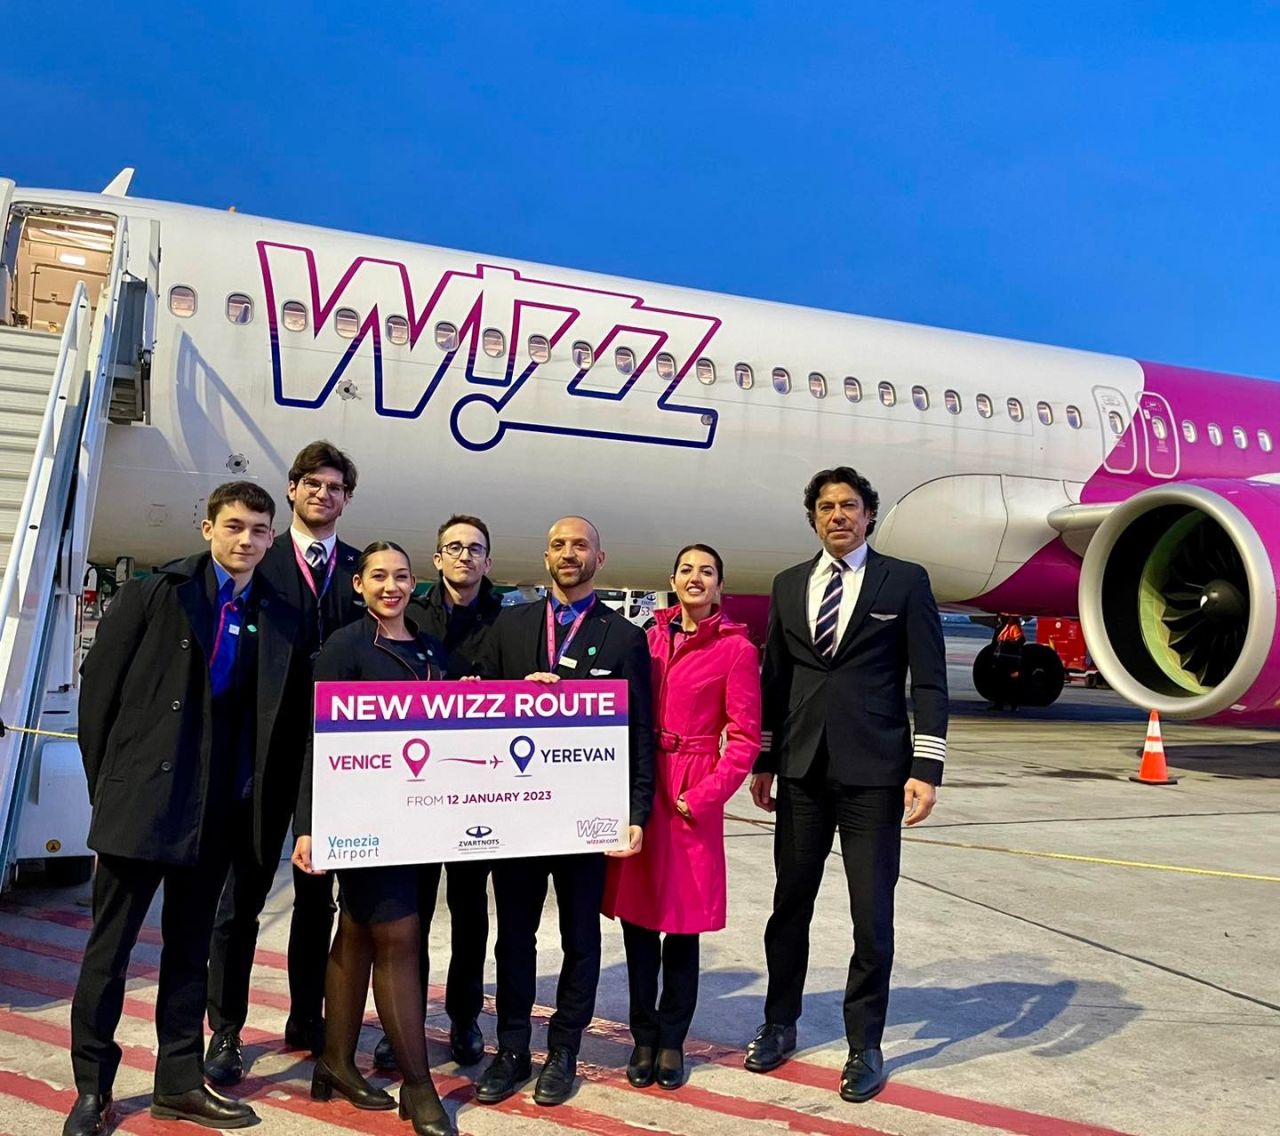 Մեկնարկել են Wizz Air ավիաընկերության Վենետիկ-Երևան- Վենետիկ երթուղով չվերթերը